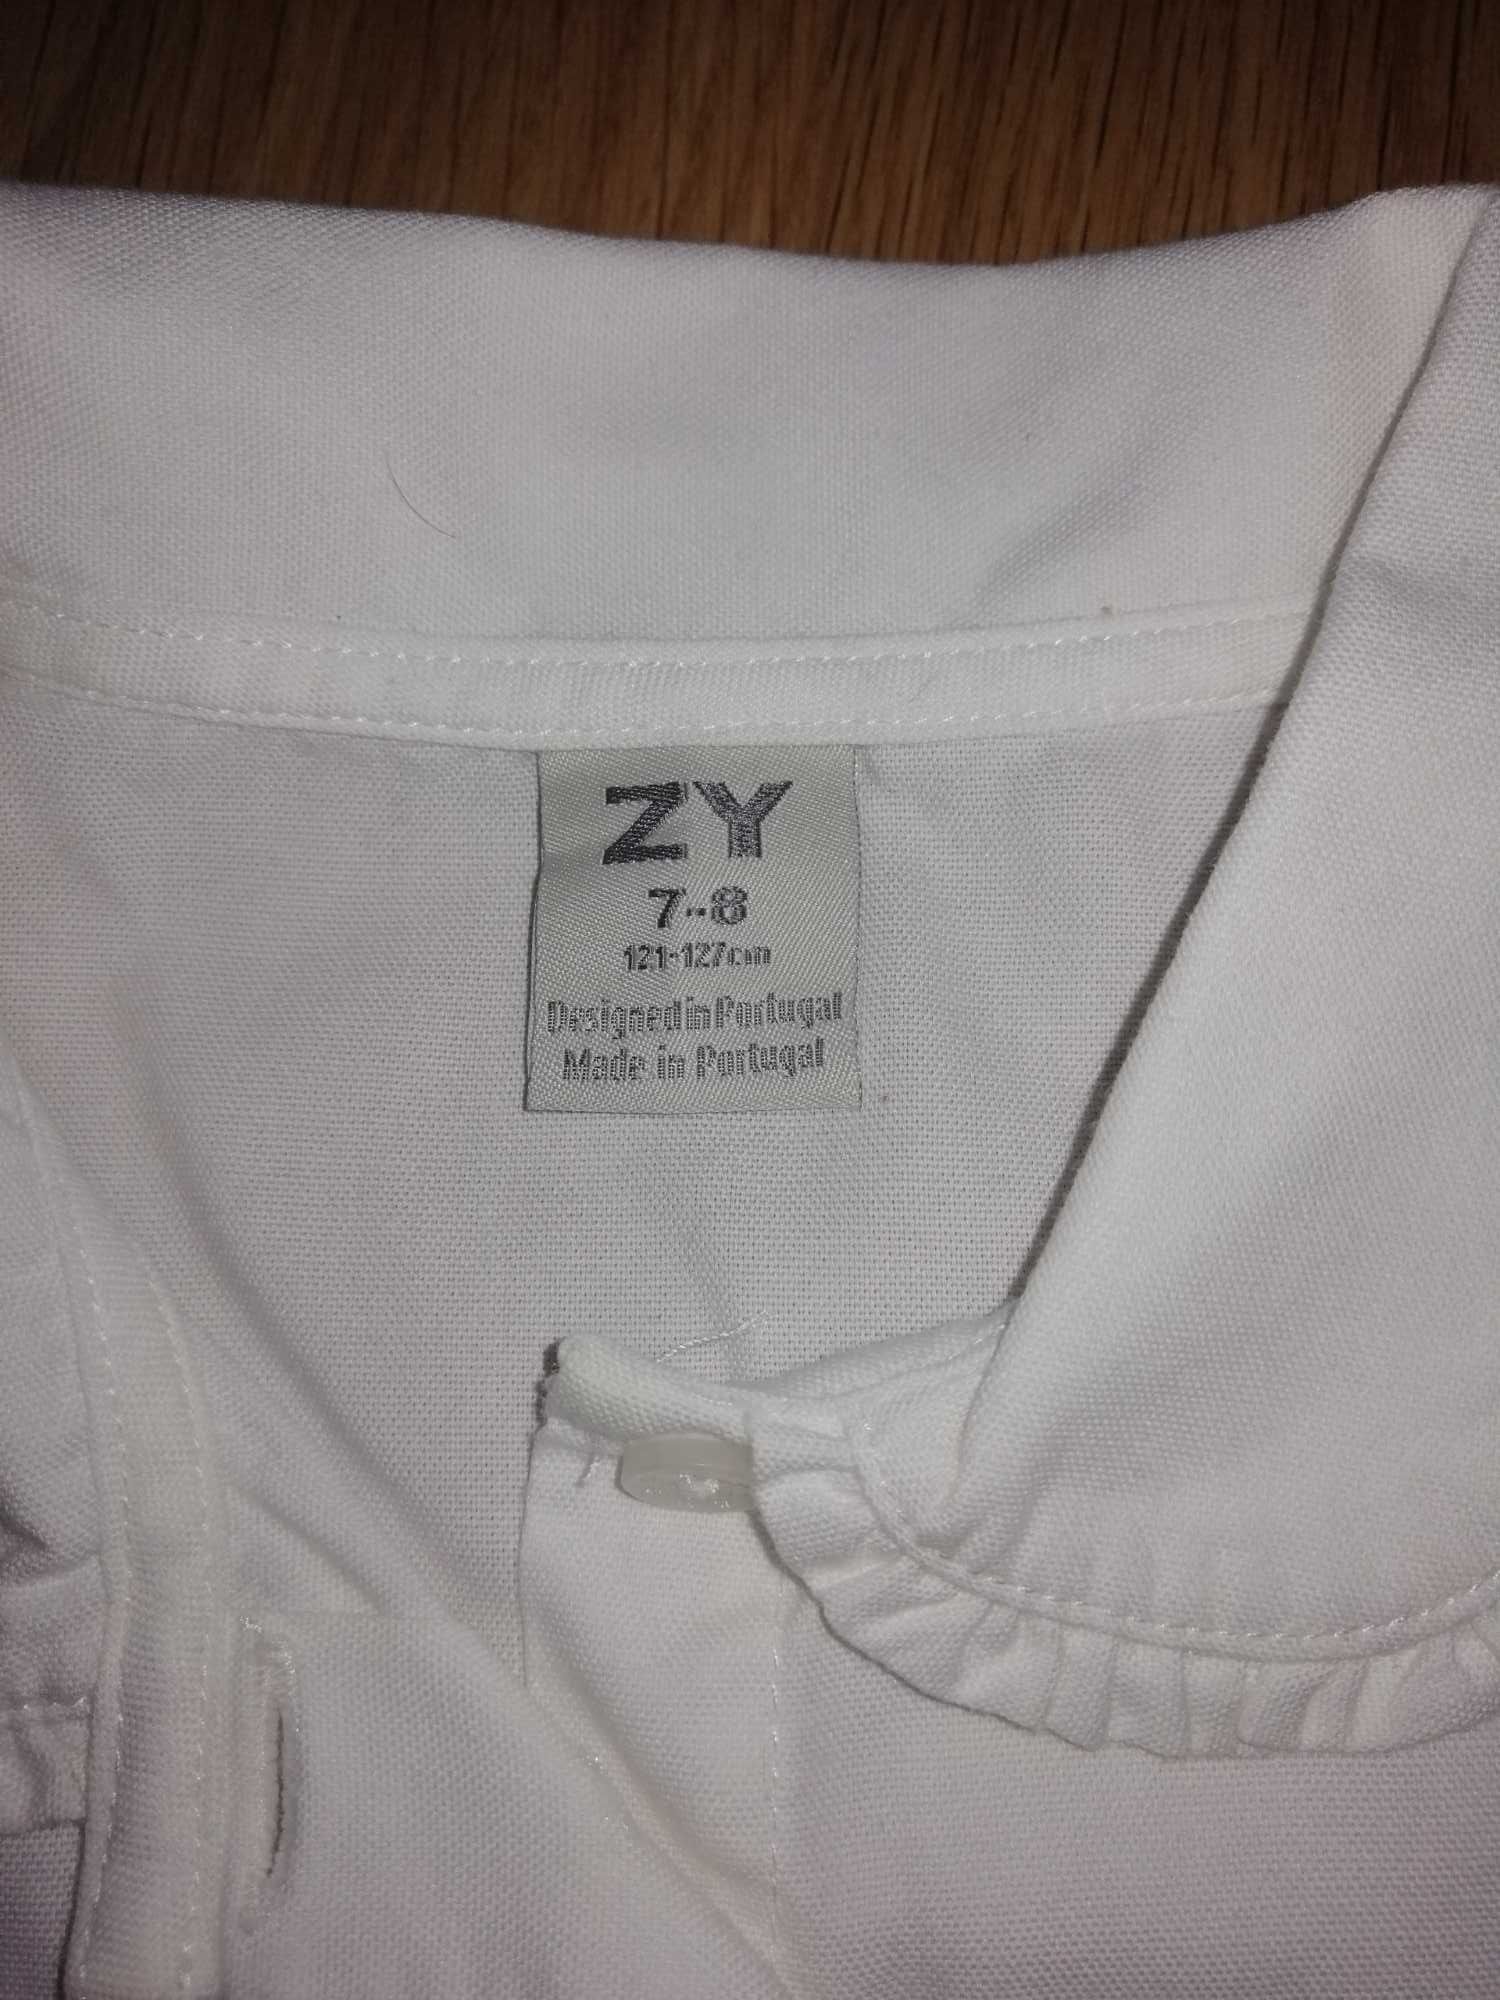 Camisa Criança Branca da Zippy: Tam 7-8 Anos (121-127cm)